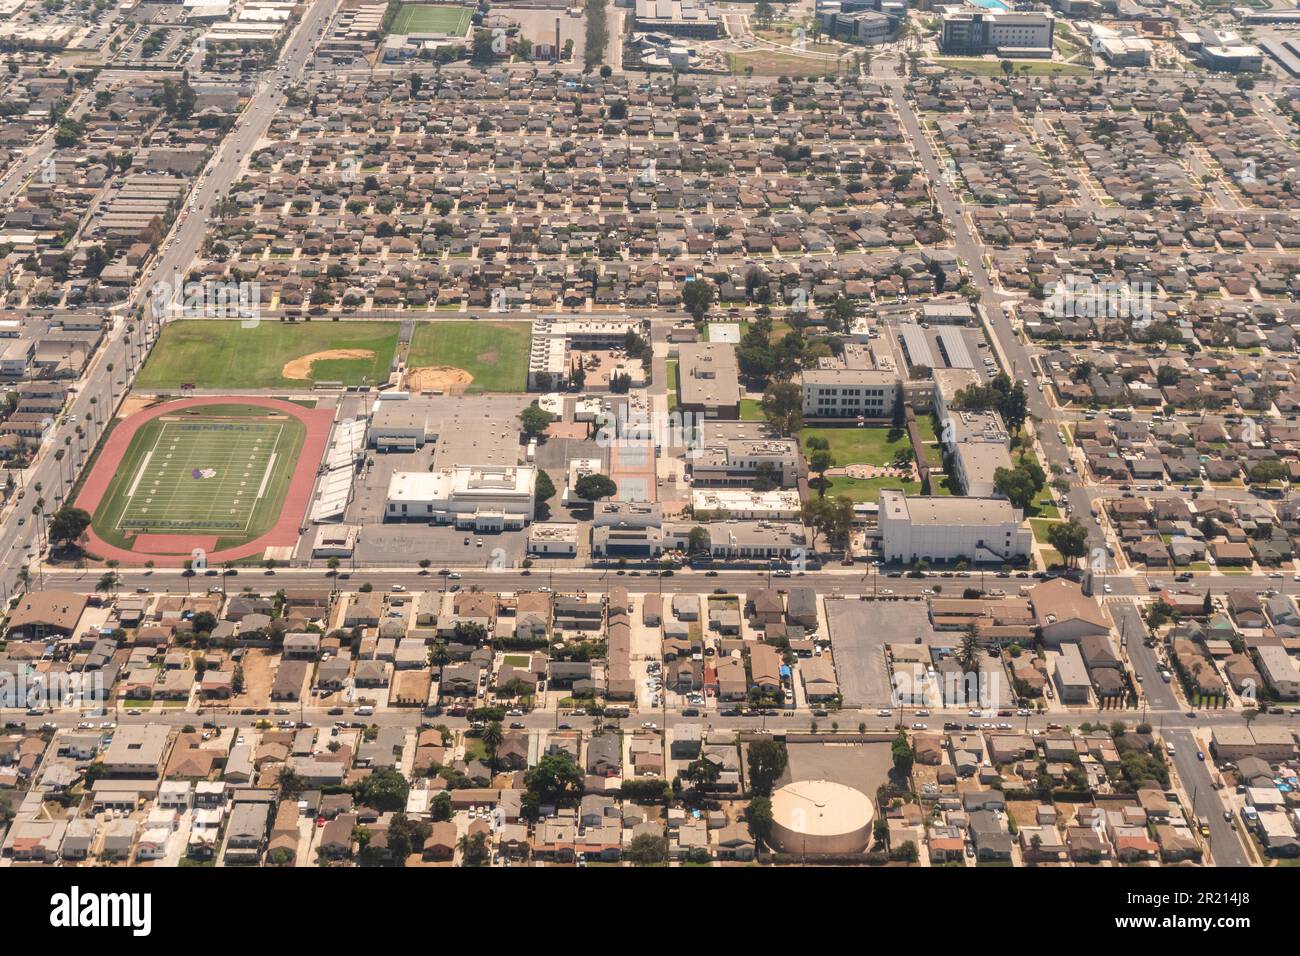 Luftaufnahme des Westmont-Abschnitts von Los Angeles, Kalifornien, usa. Washington Prep High School und die umliegenden Gebäude sind sichtbar. Stockfoto